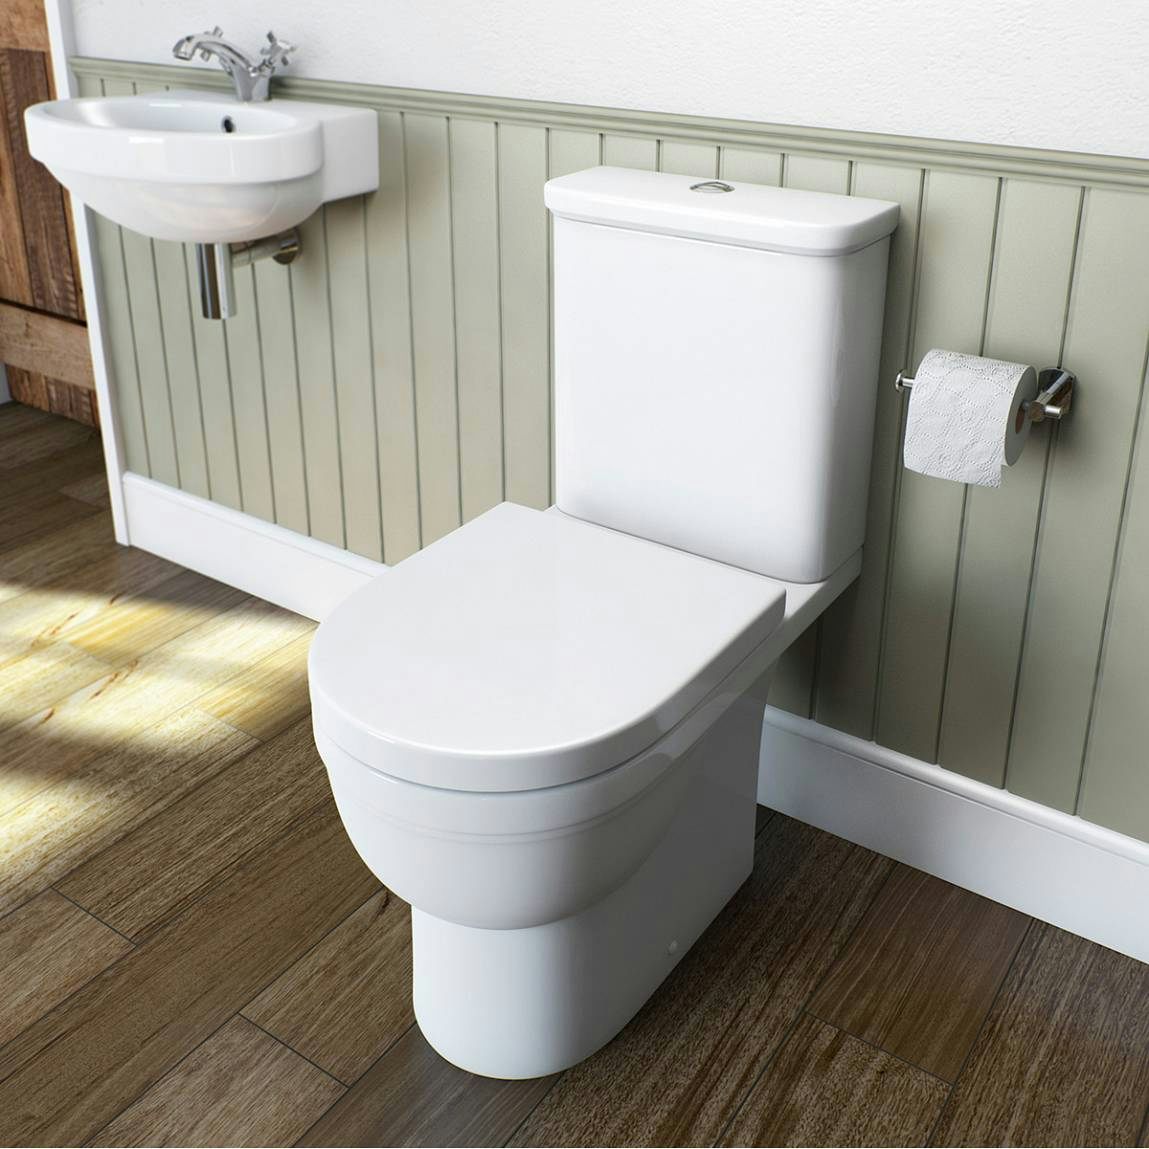 Elsdon toilet seat